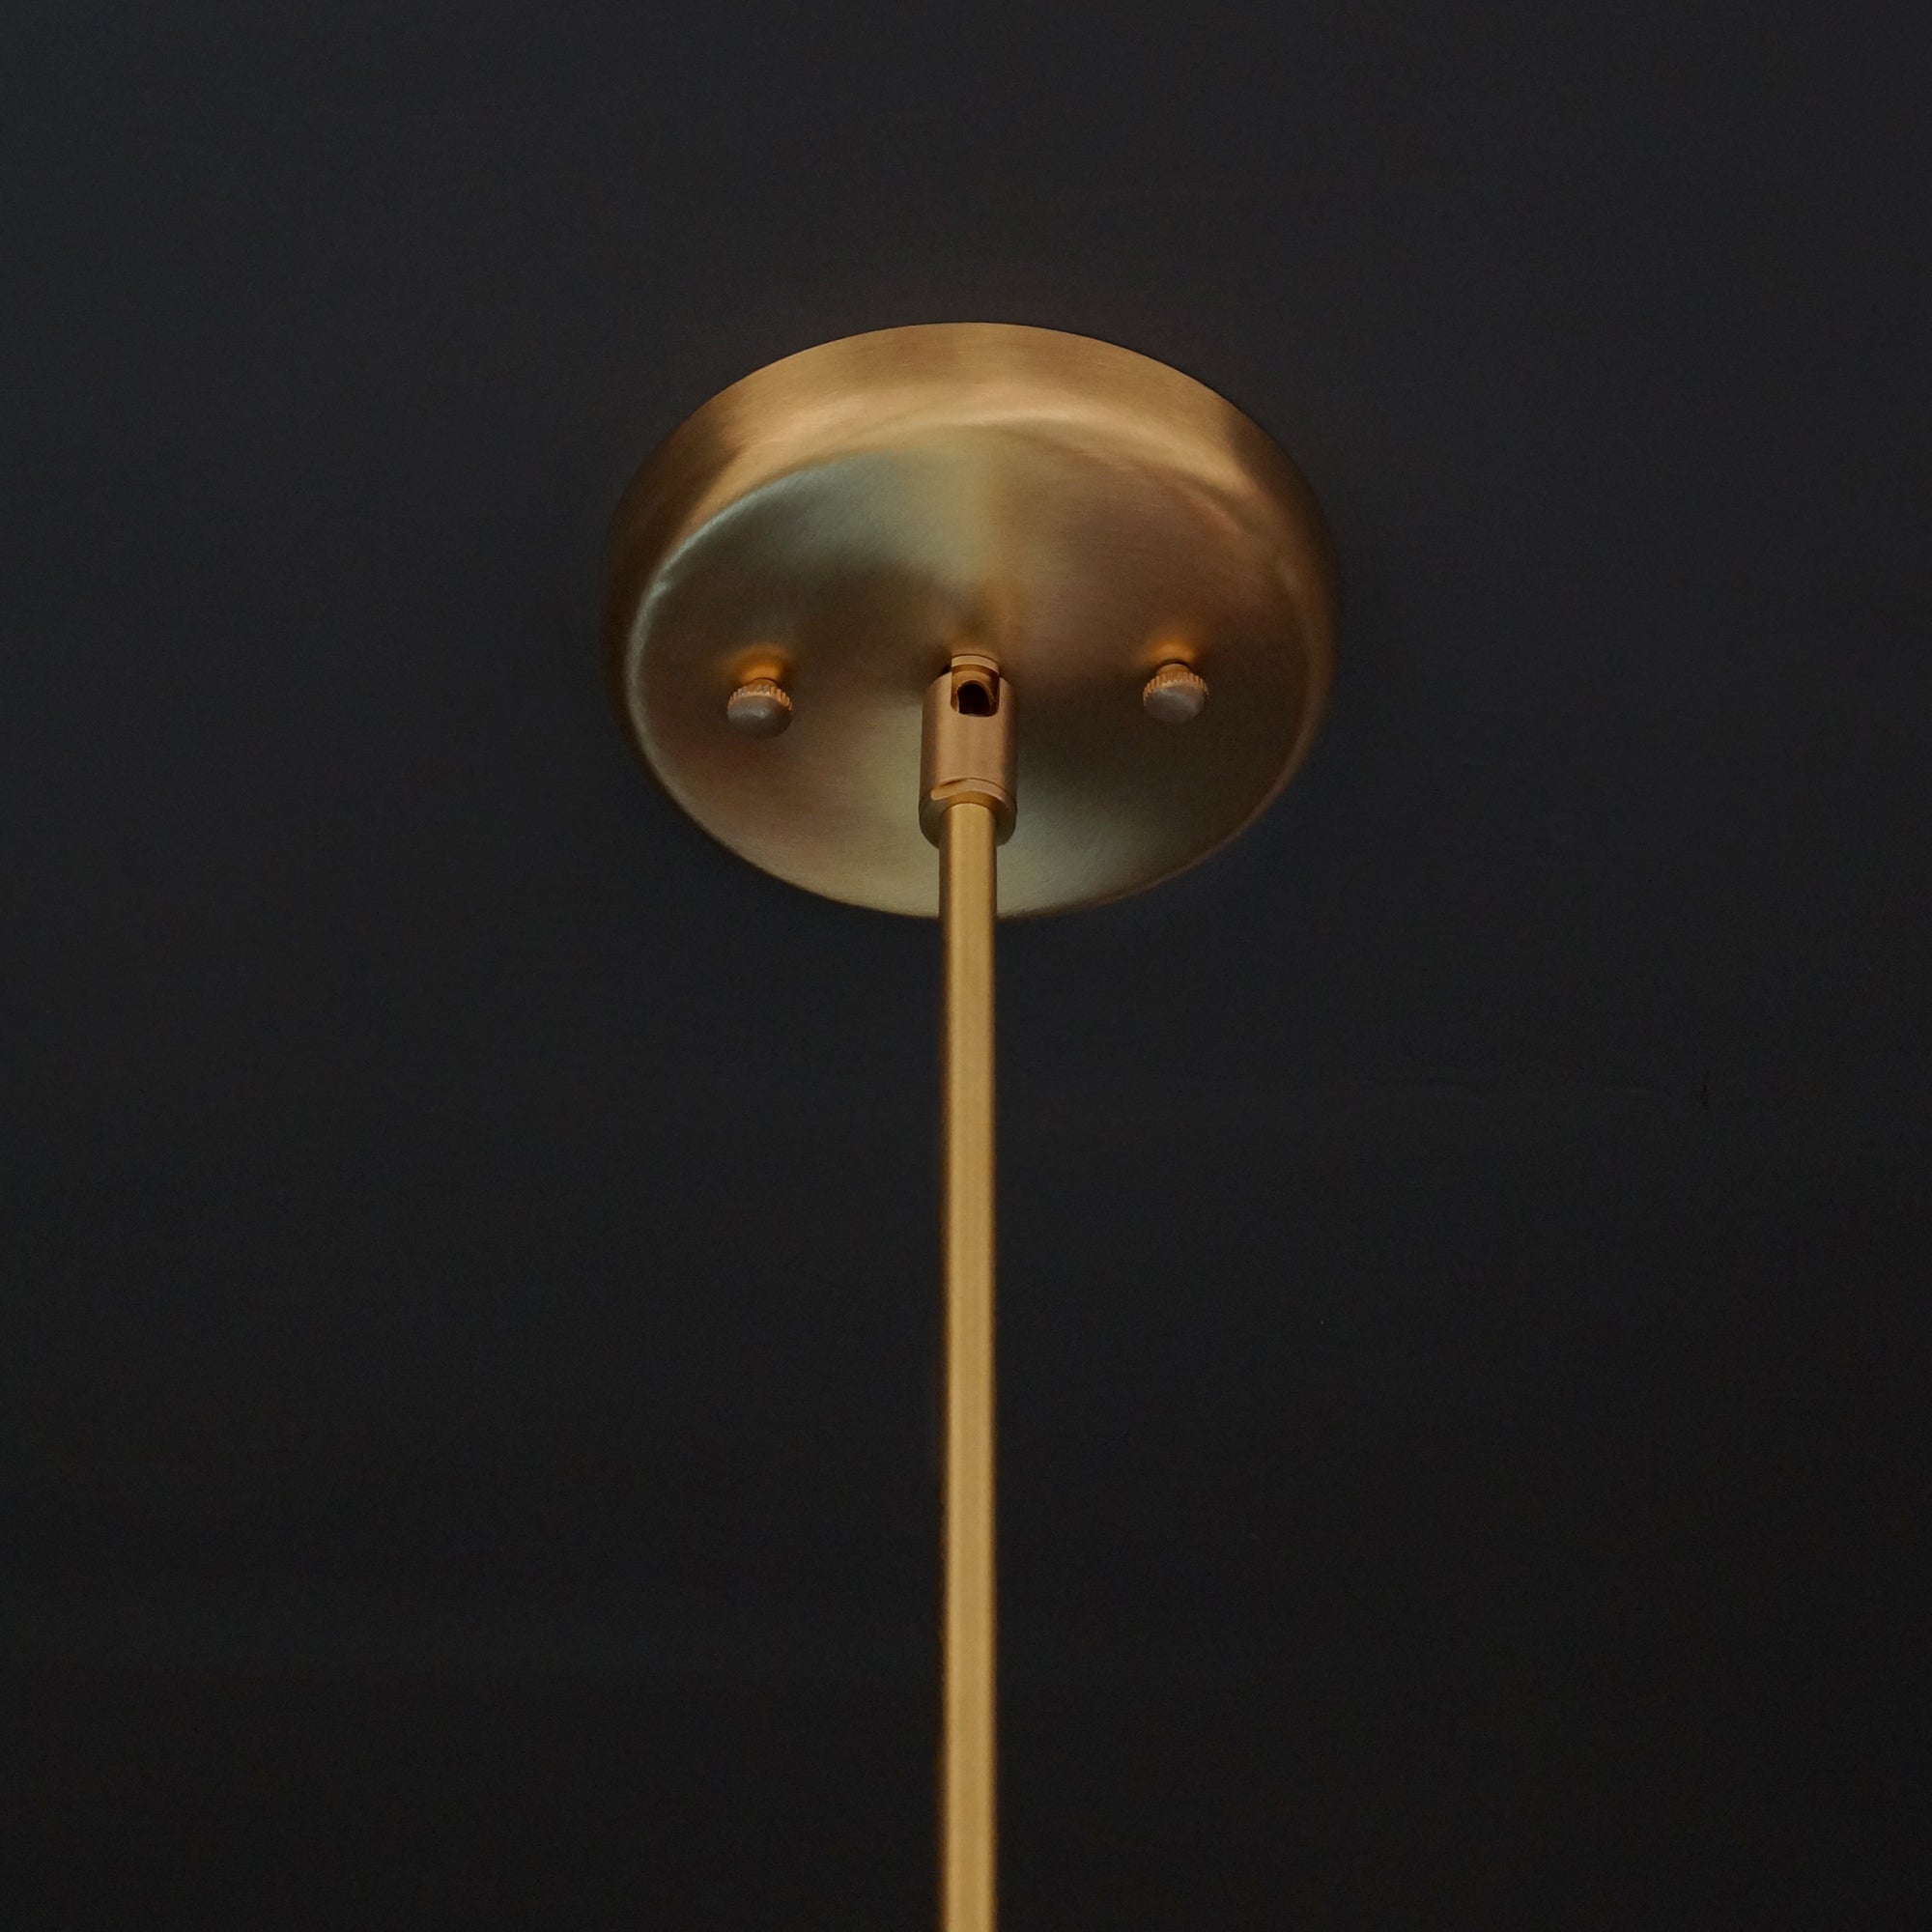 16 Lights Modern Brass Sputnik Urchin Chandelier Light Fixture 22"D - Doozie Light Studio